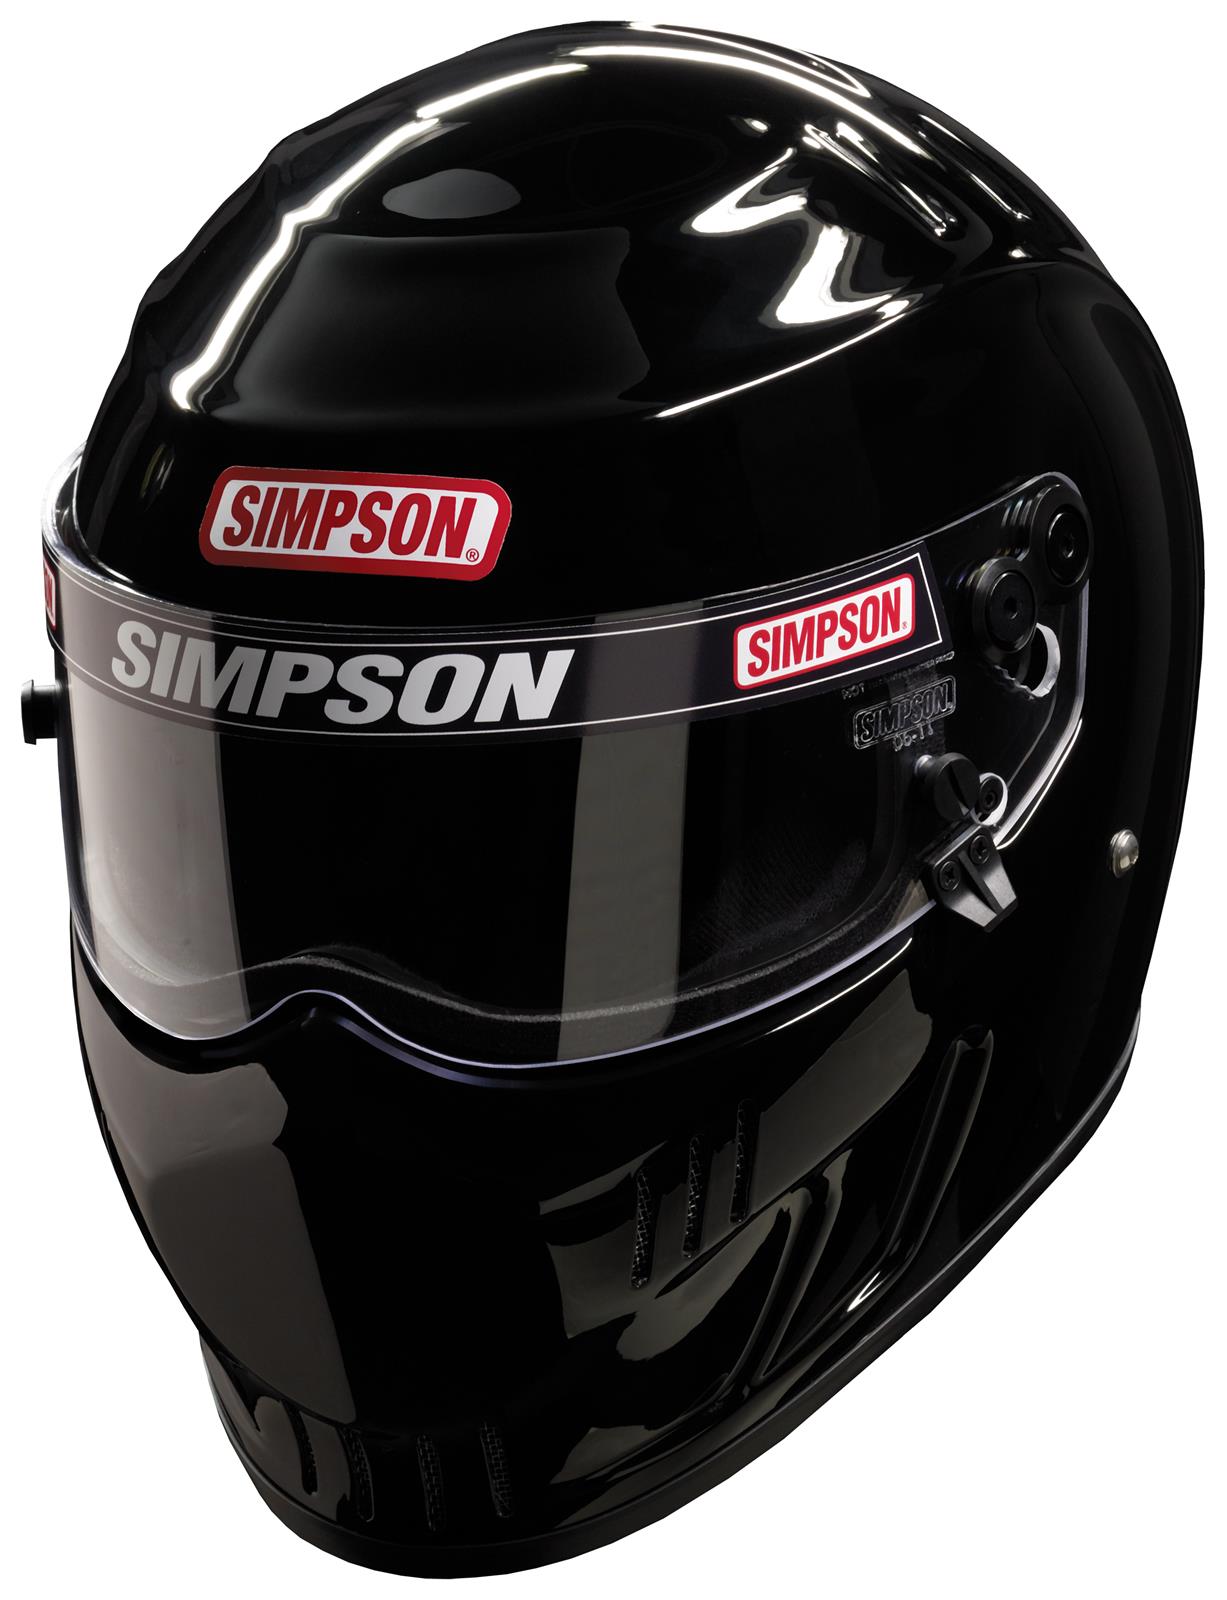 Simpson Racing 6517388 Simpson Speedway RX Series Helmets | Summit Racing